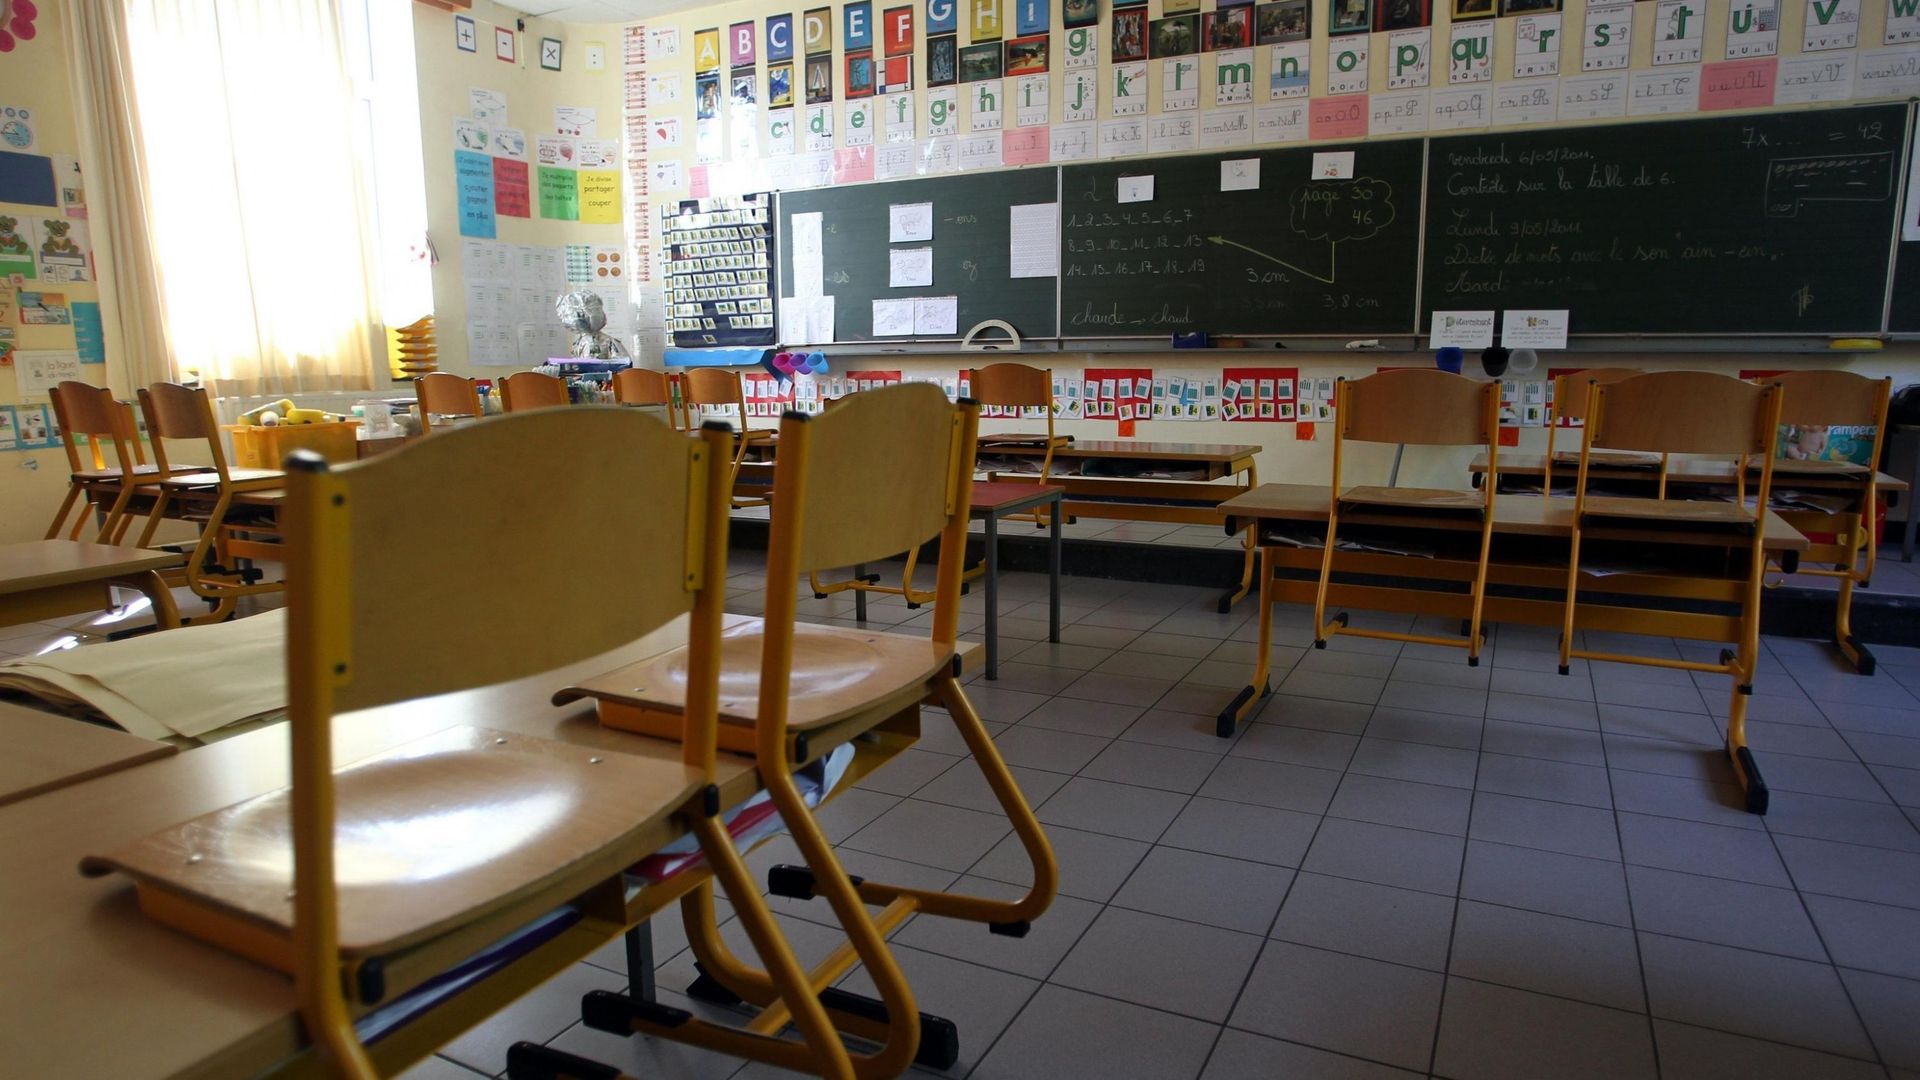 Une classe vide dans une école de Liège.